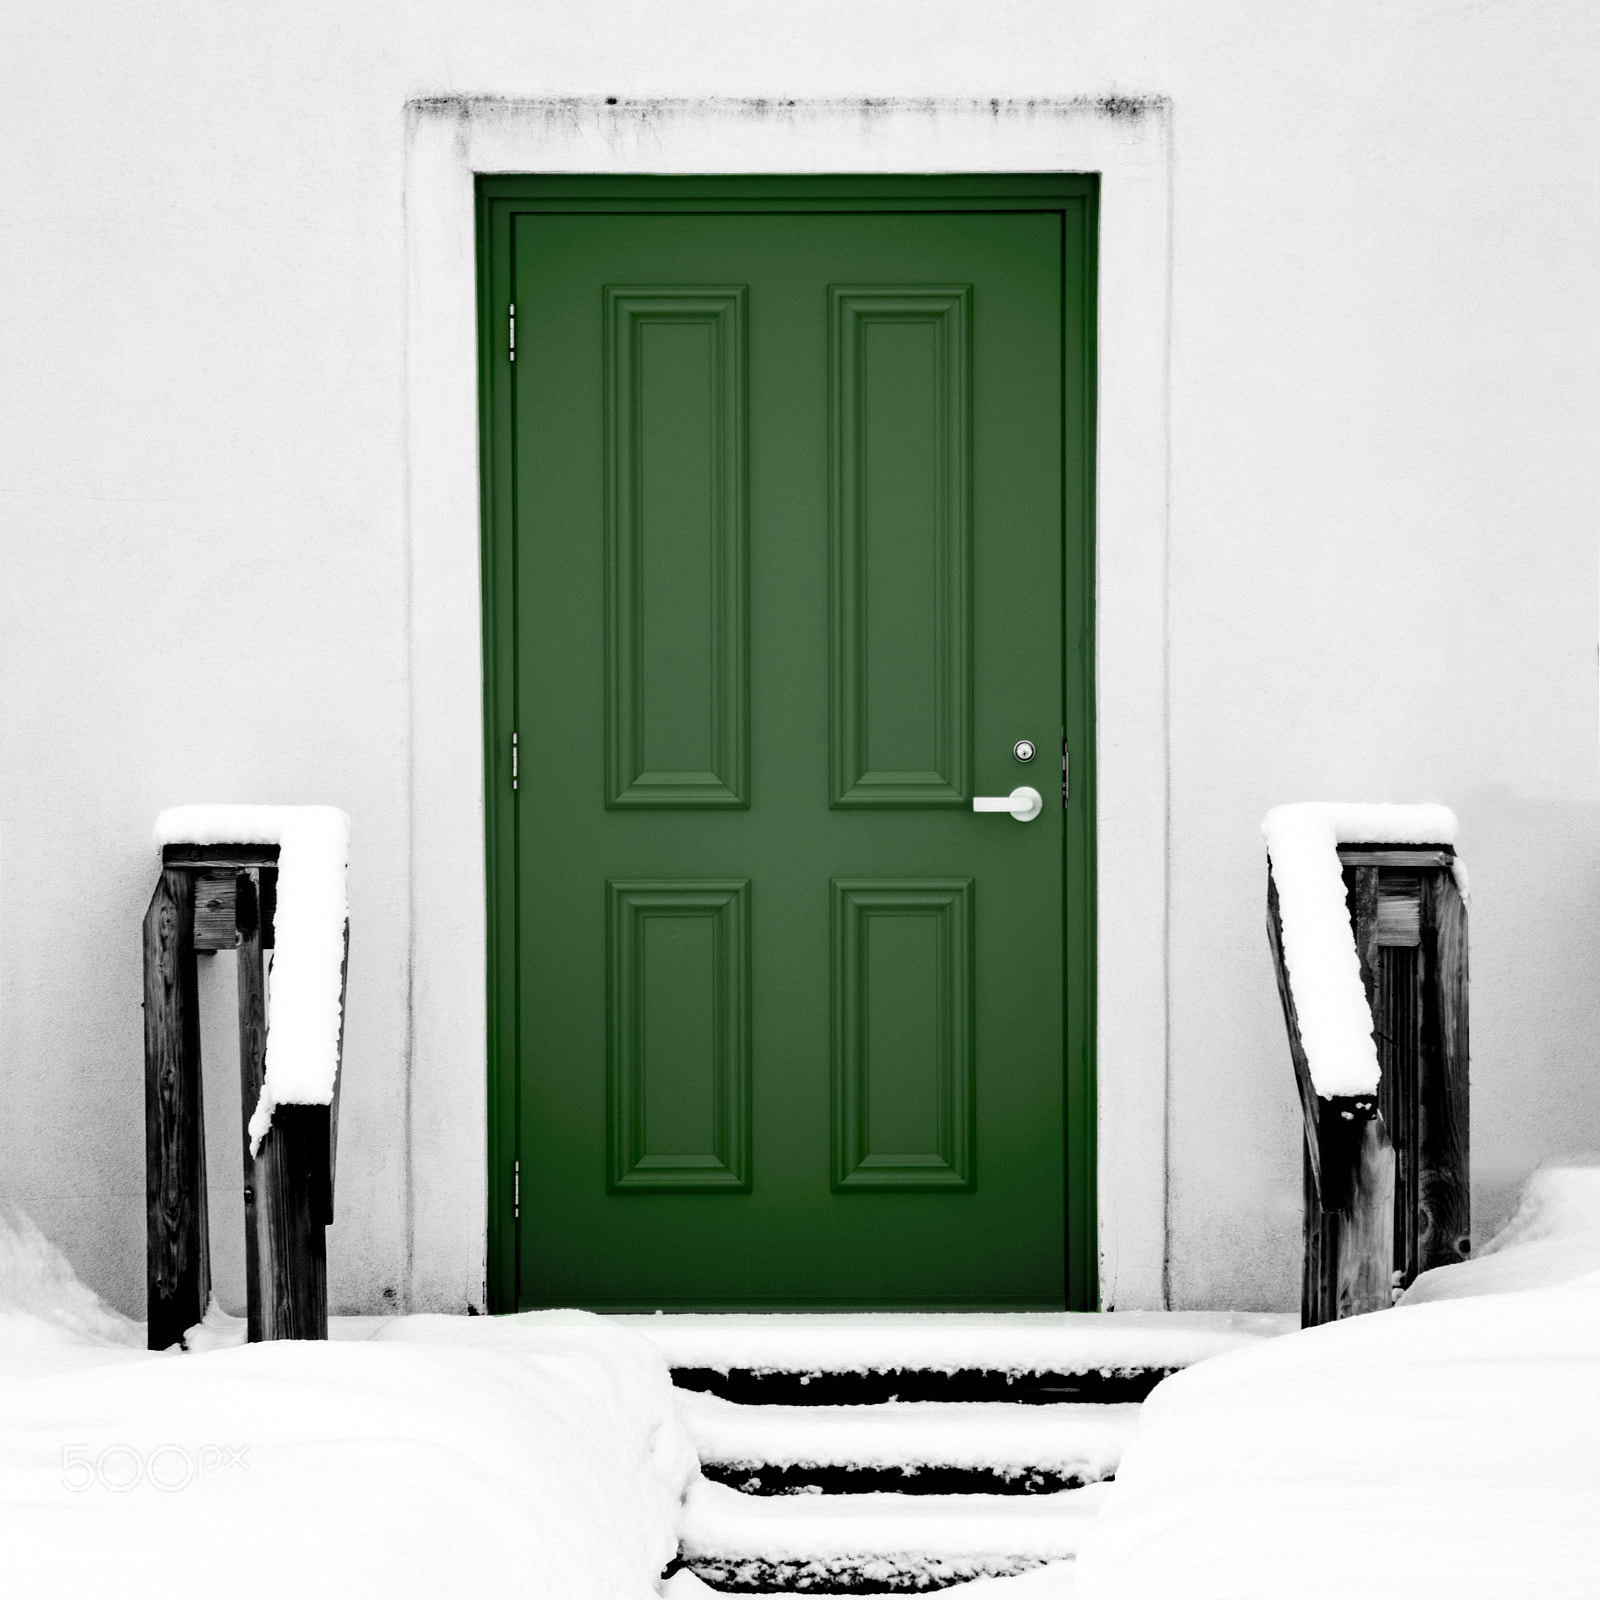 Pentax K-3 II sample photo. Green door photography